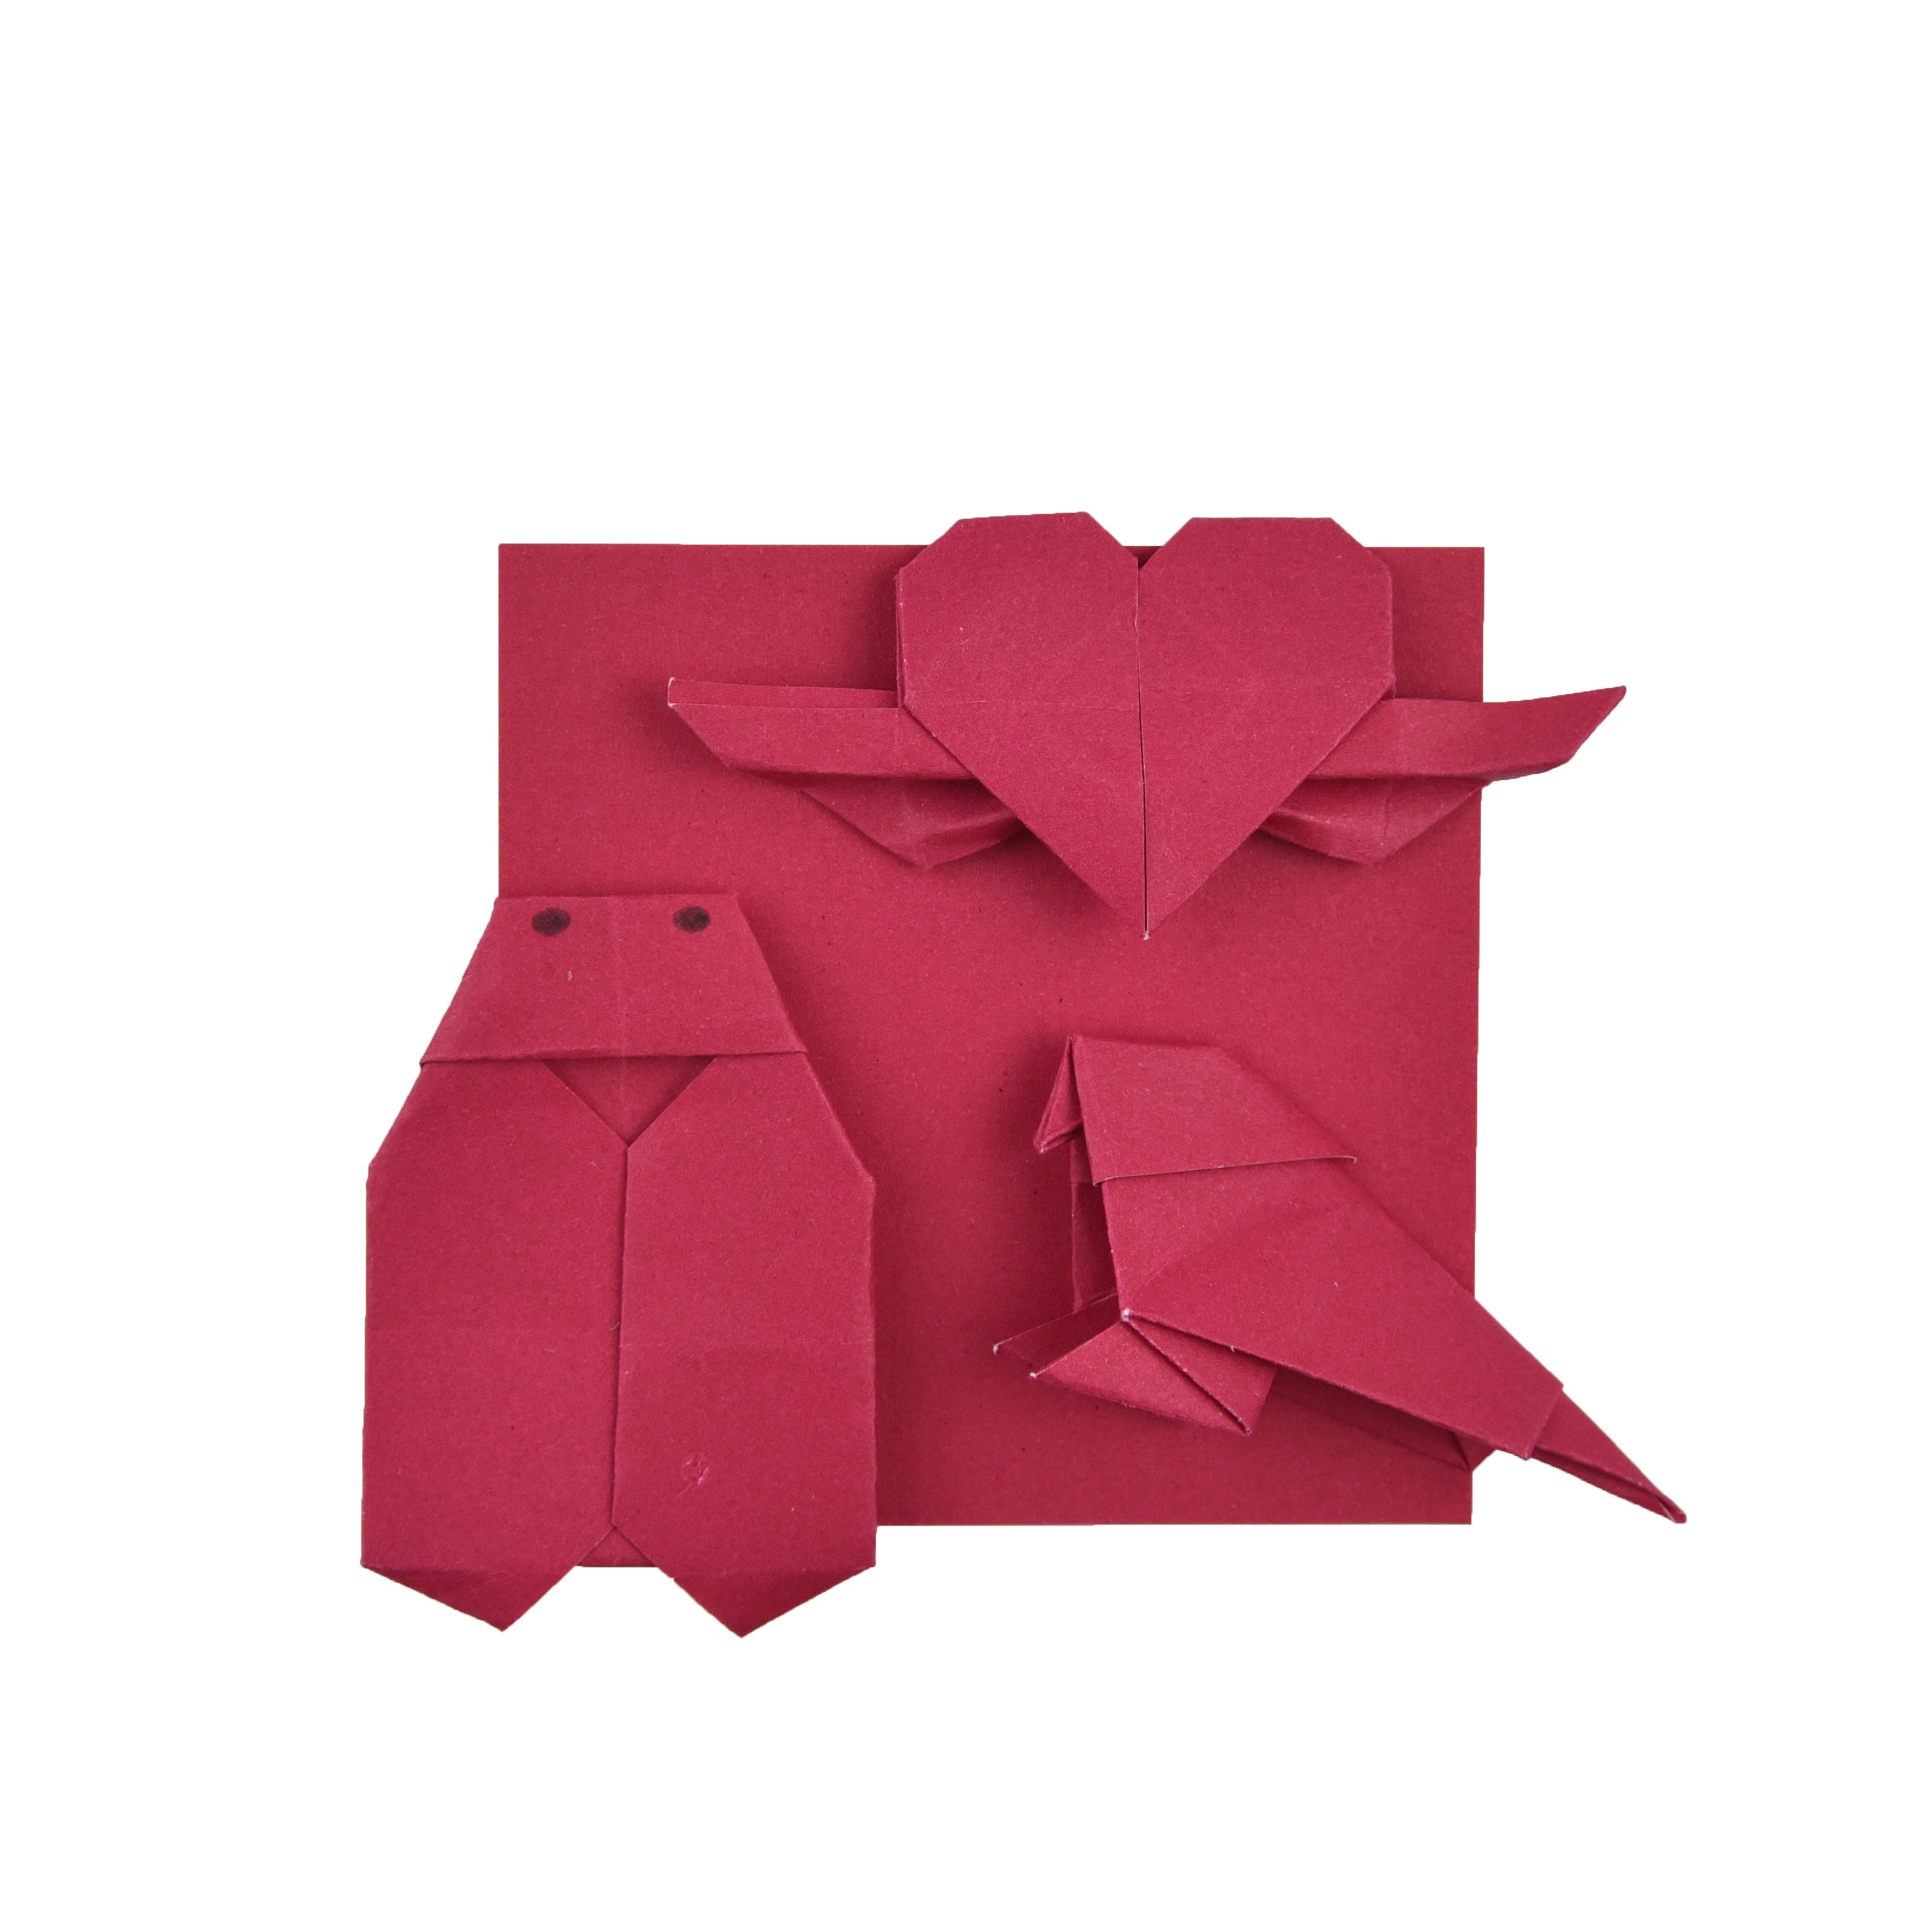 100 Hojas de Papel Origami - 3x3 pulgadas - Paquete de Papel Cuadrado para Plegar, Grullas de Origami y Decoración - S15